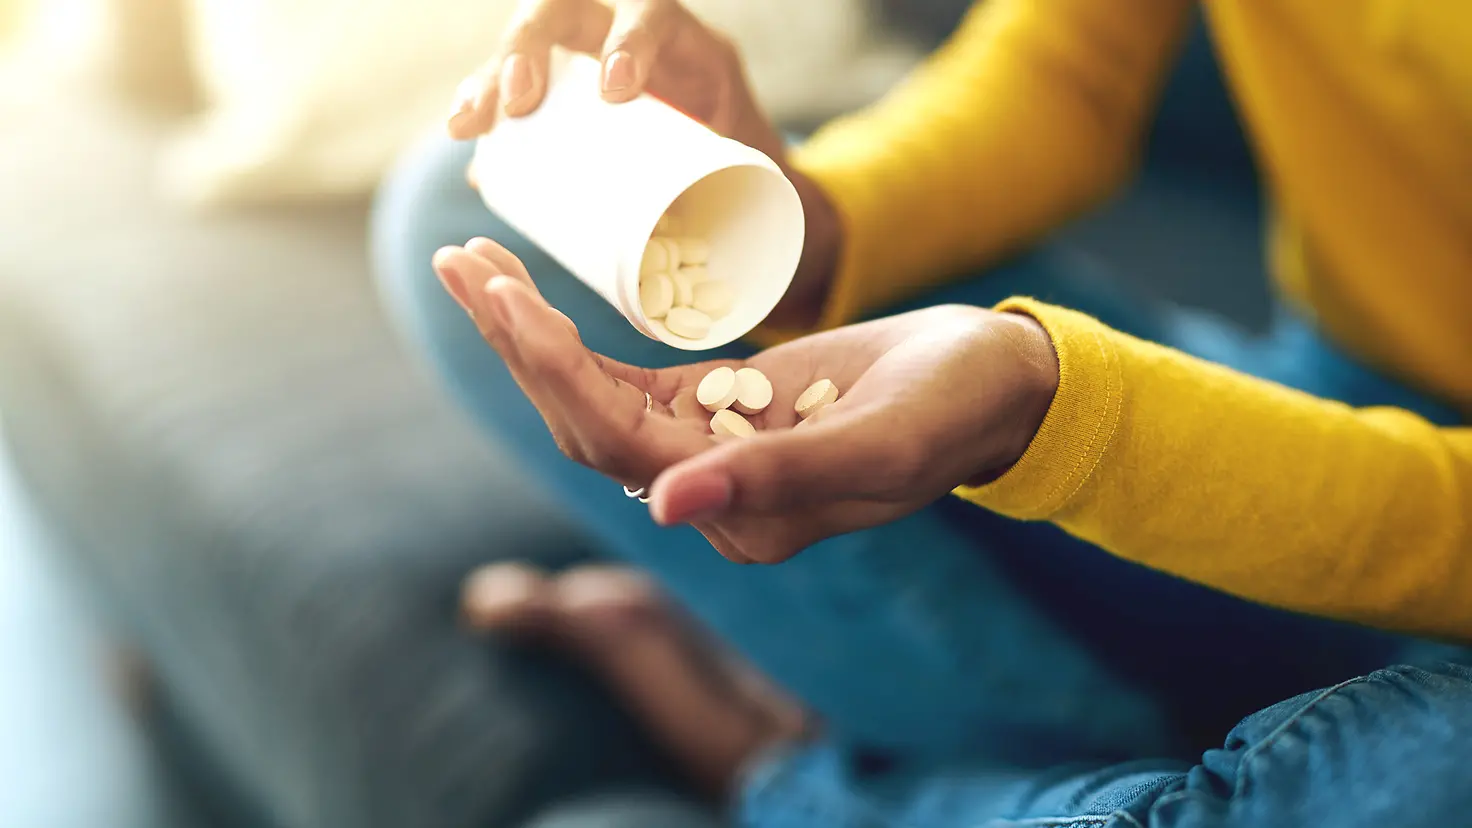 Eine Frau schüttet aus einem Behälter einige Tabletten in ihre linke Hand.